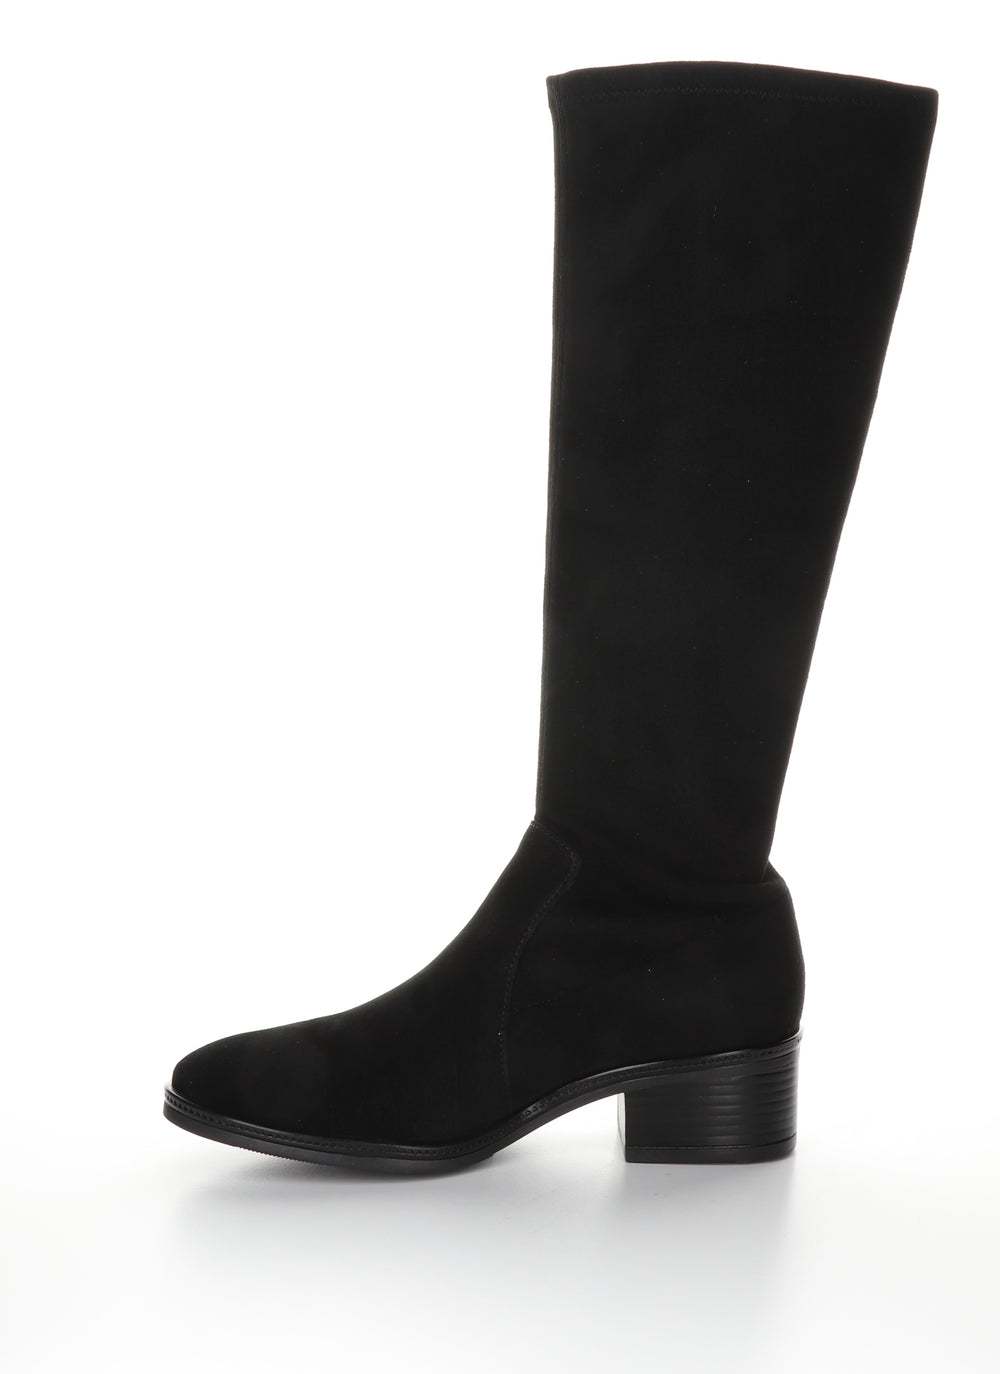 JAVA Black/Black Round Toe Boots